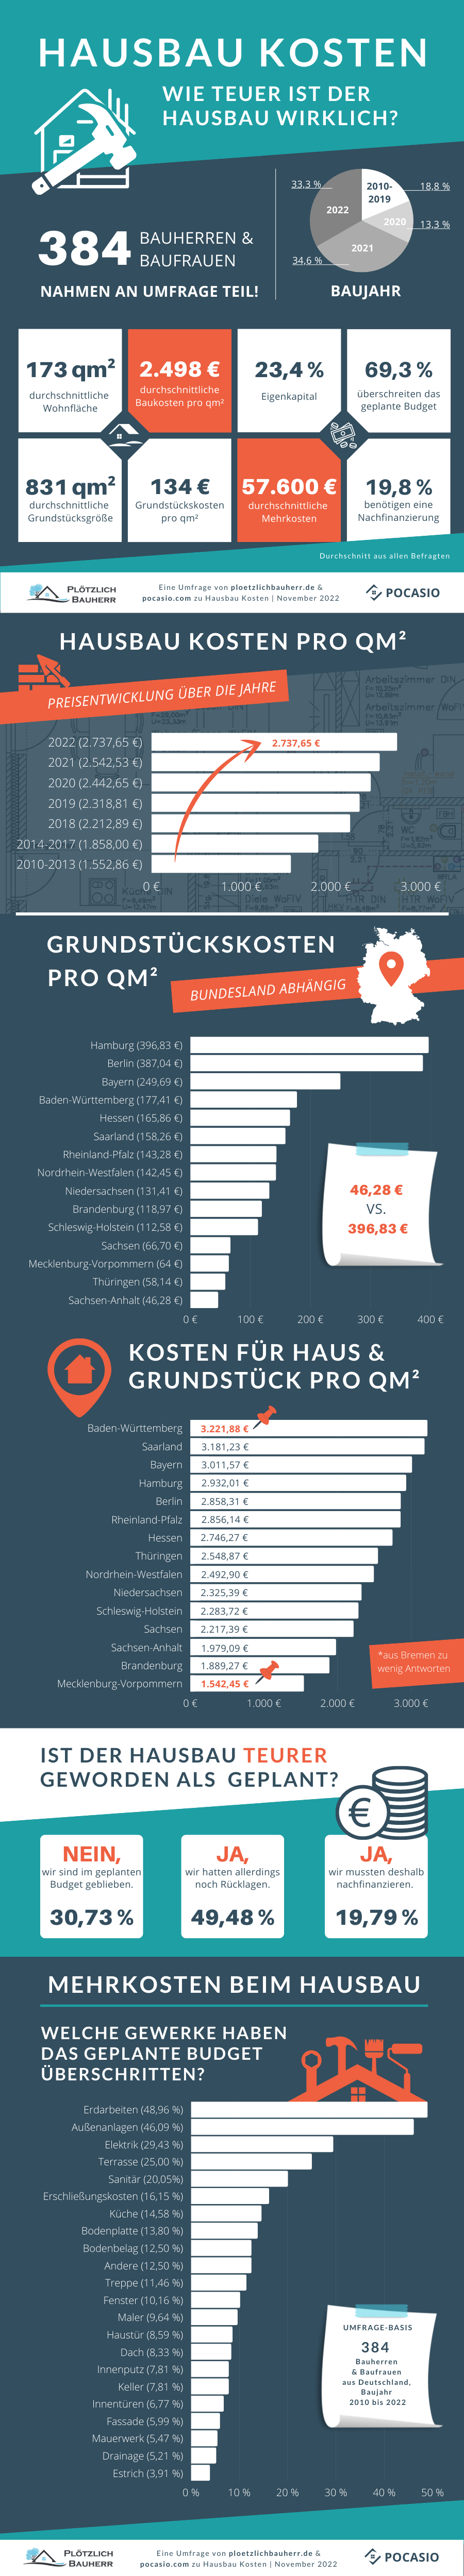 Infografik Hausbau Kosten - Wie teuer ist der Hausbau wirklich